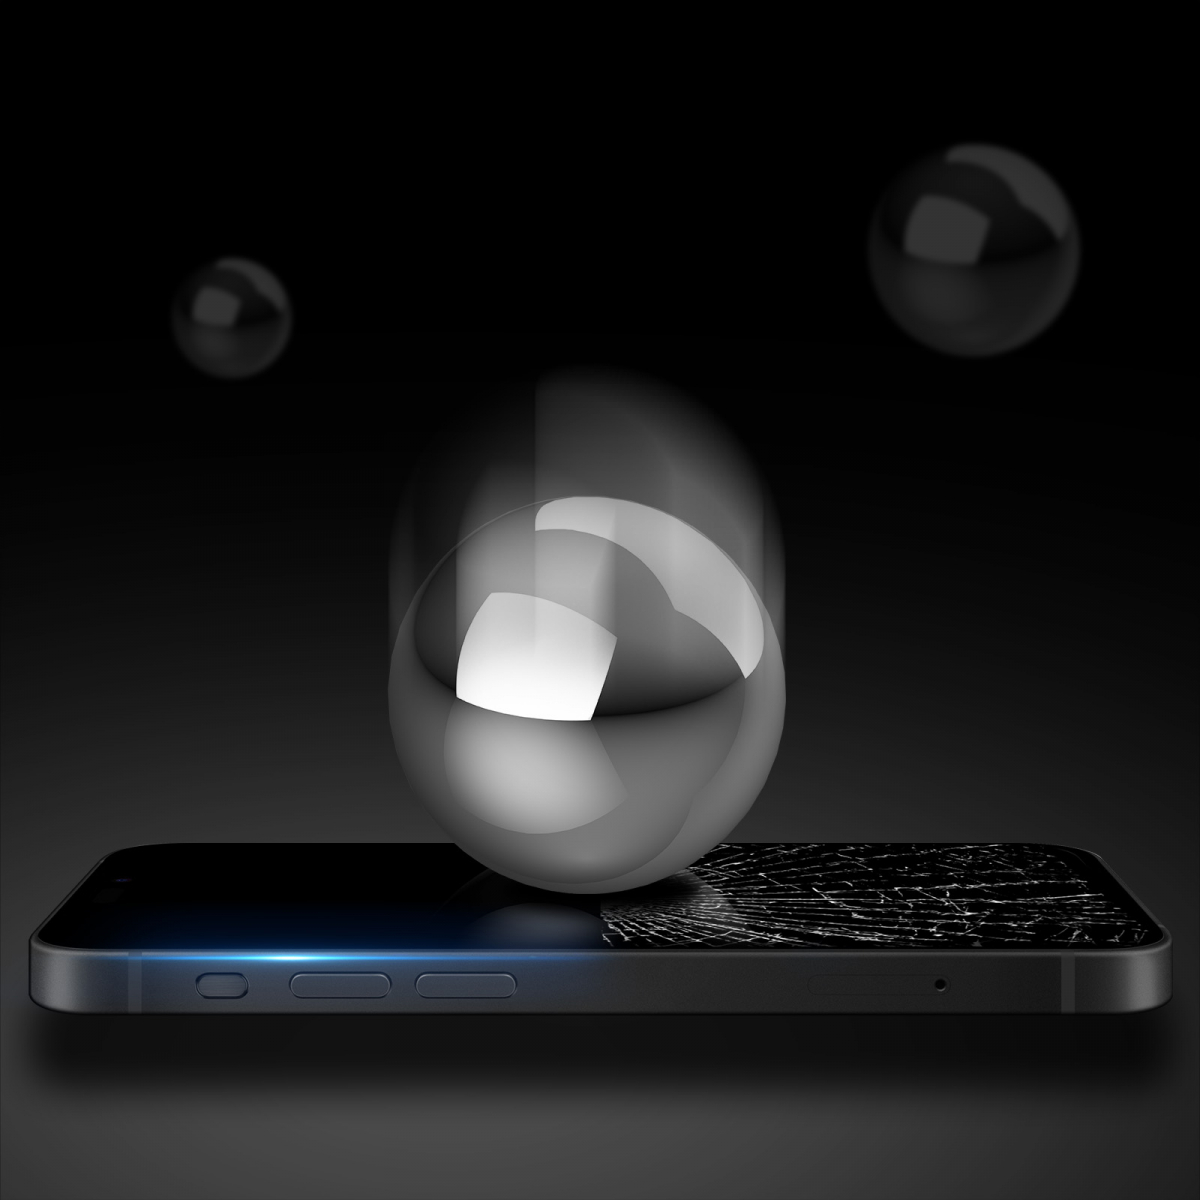 DUX DUCIS skärmskydd i härdat glas till iPhone 15 Pro